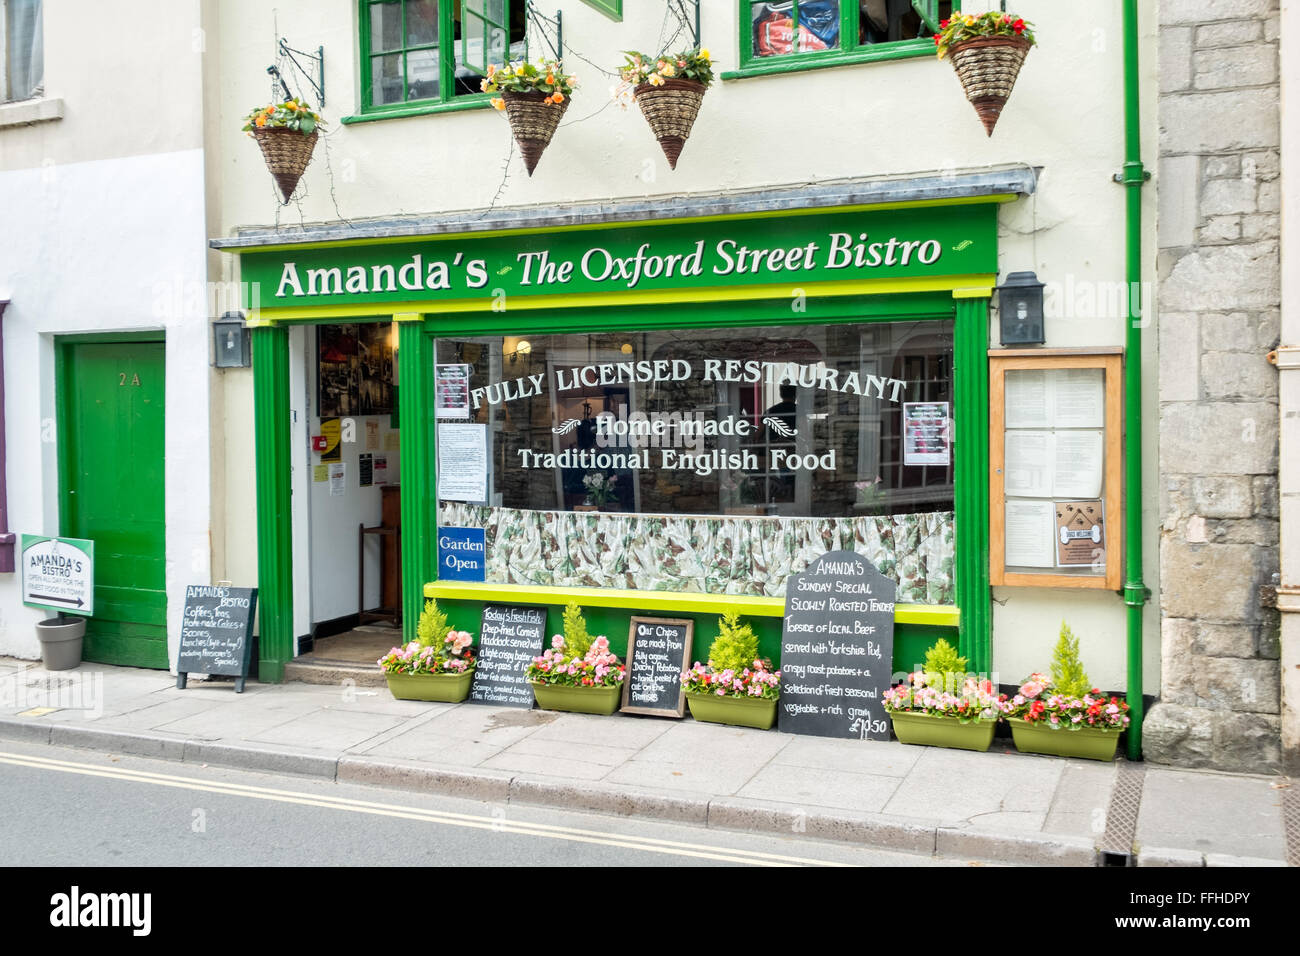 L'avant d'une résidence typique de la ville restaurant licencié, 'Amanda' bistro sur Oxford street, Malmesbury, Wiltshire, Royaume-Uni Banque D'Images